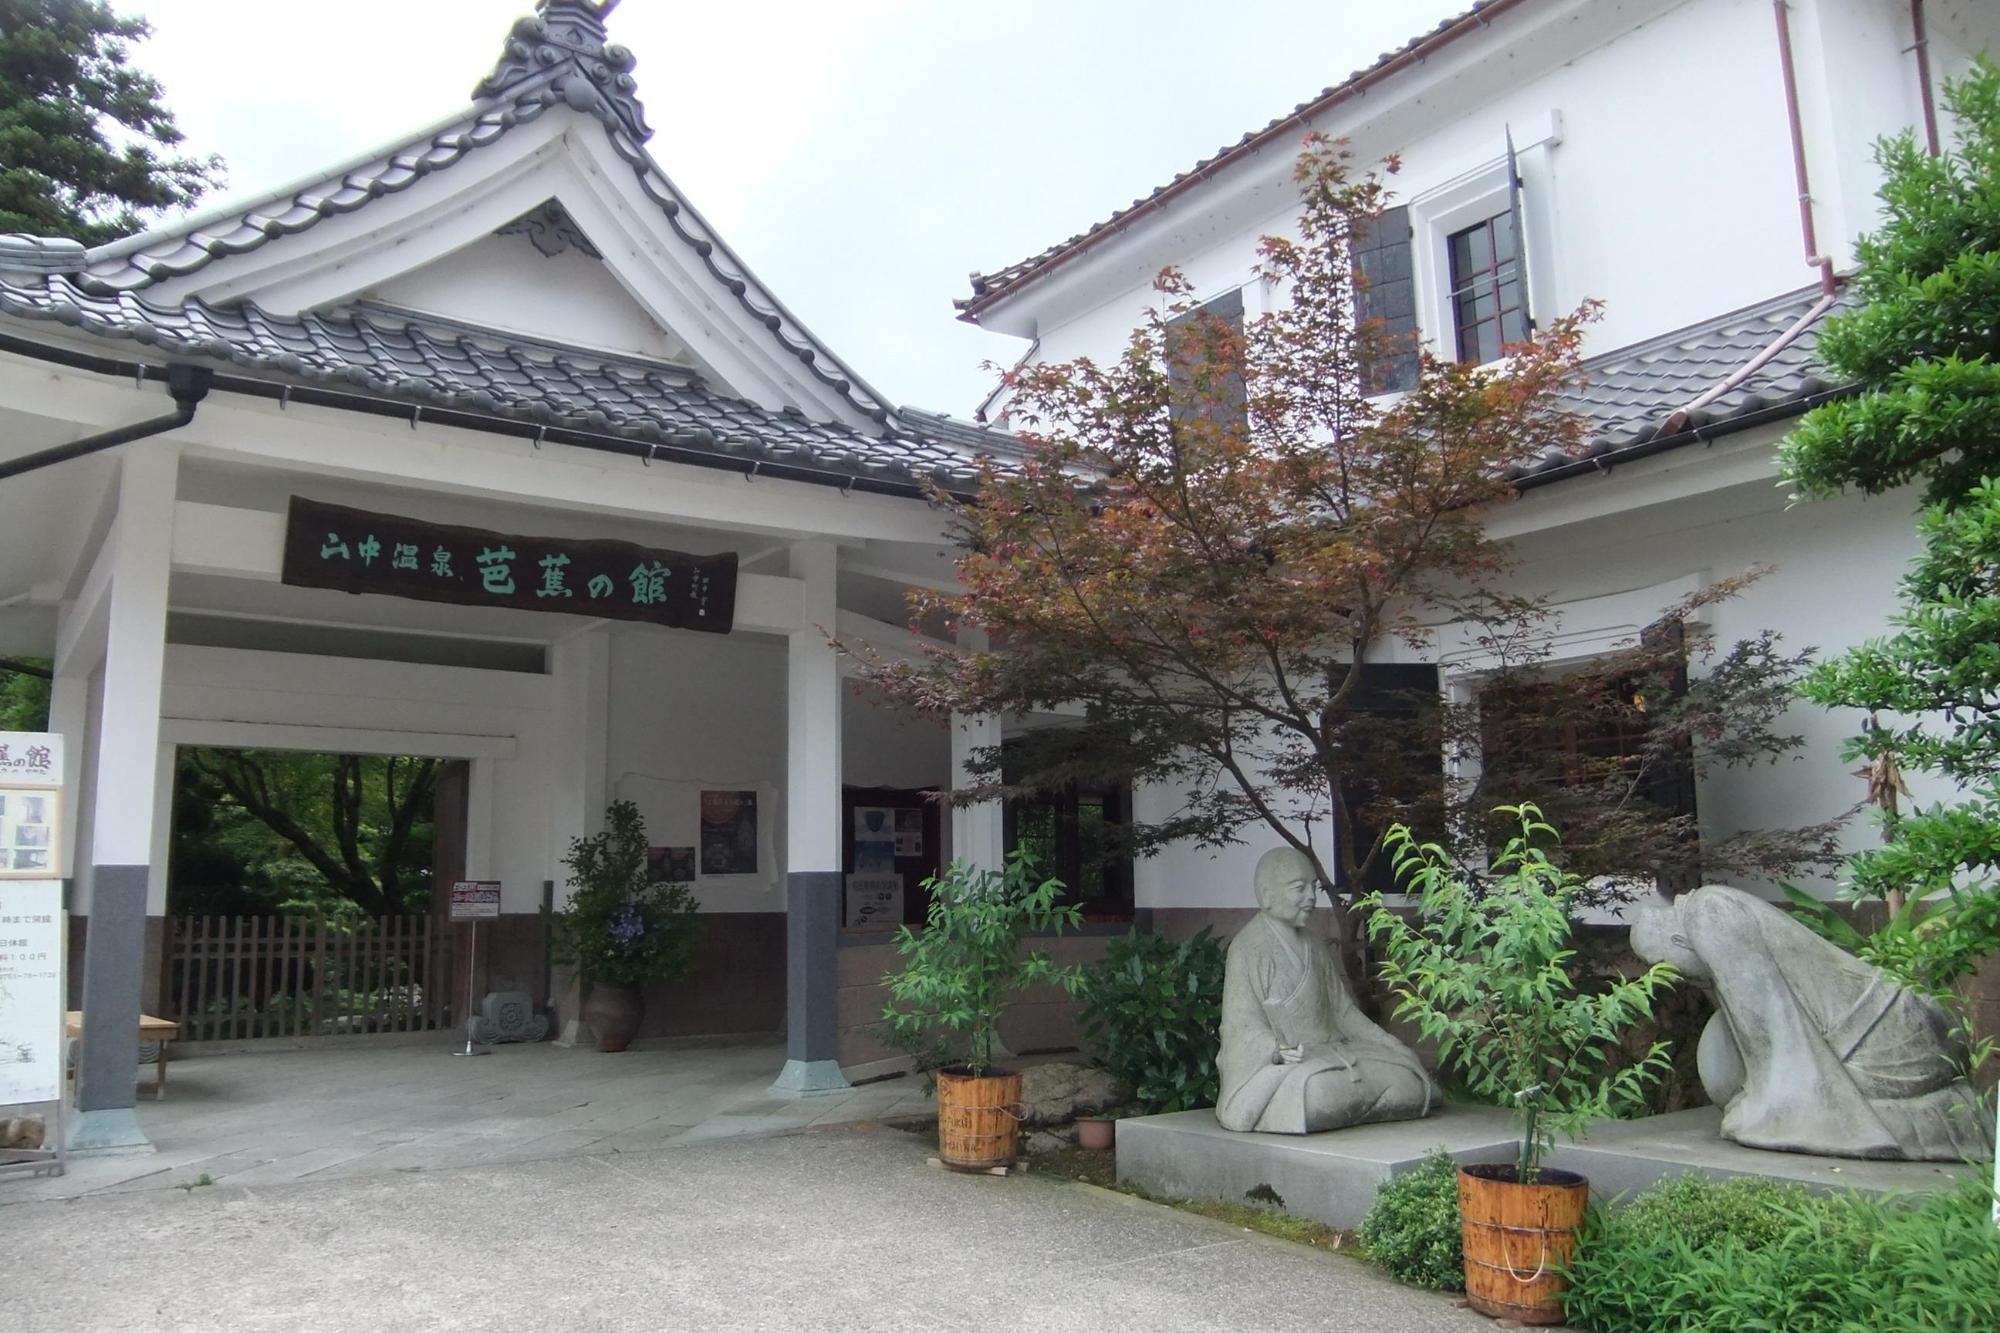 芭蕉の館の入口門と門右側に植えられてある植栽の写真